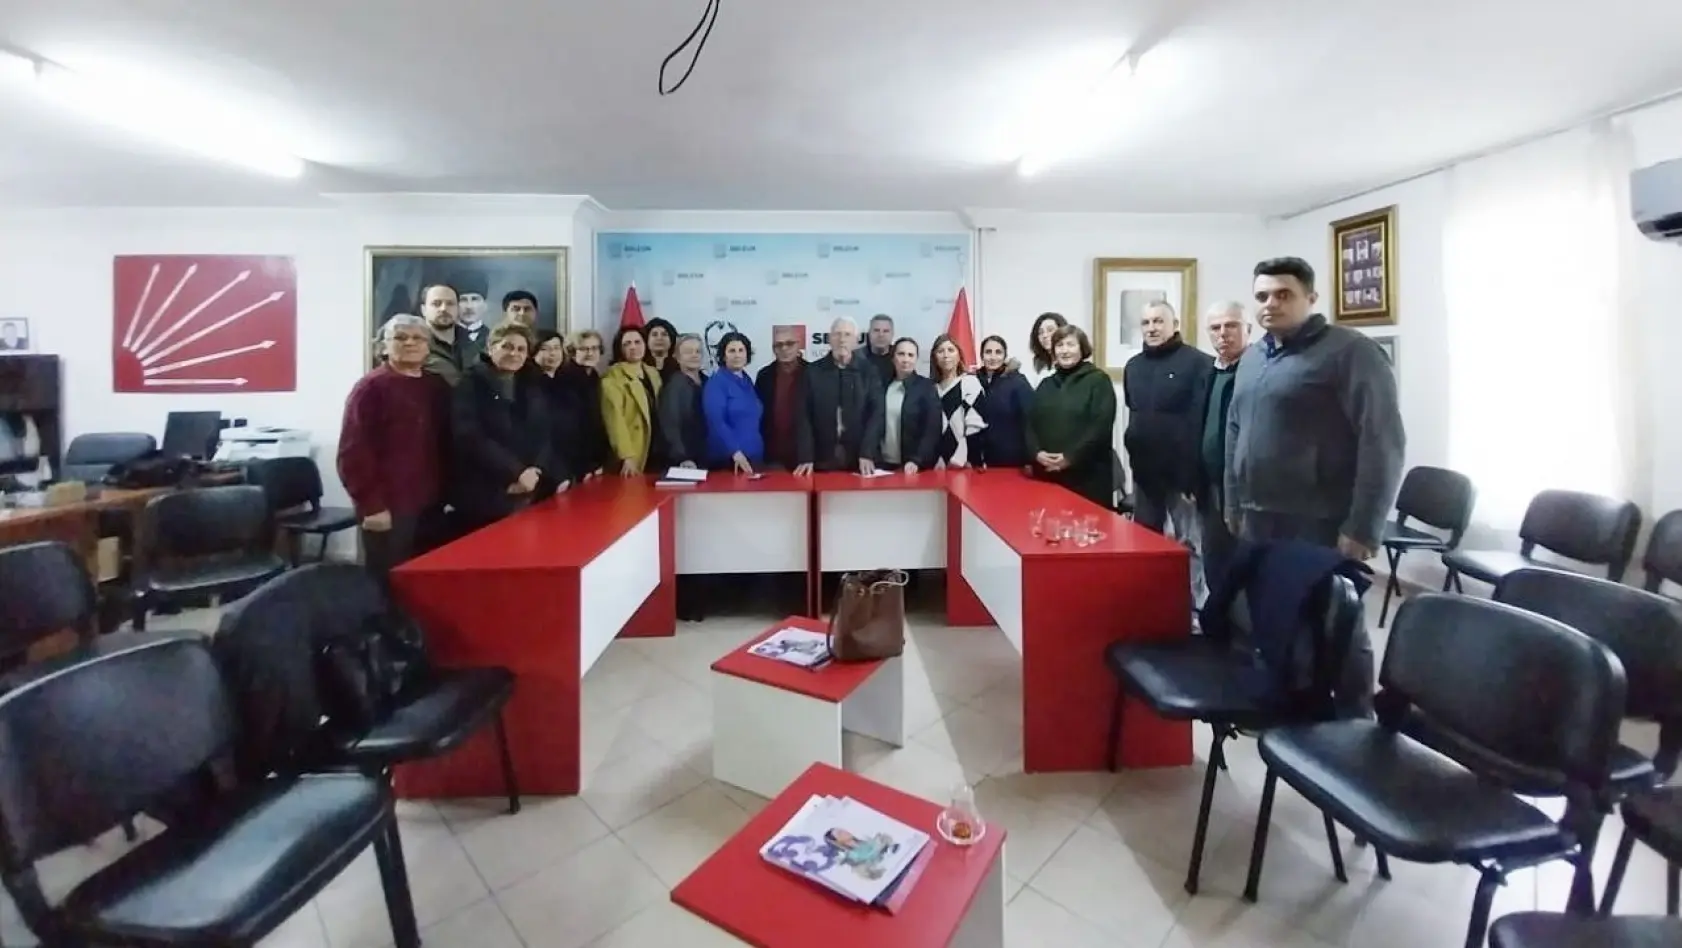 Partisinden Belediye Başkanı Filiz Ceritoğlu Sengel'e destek